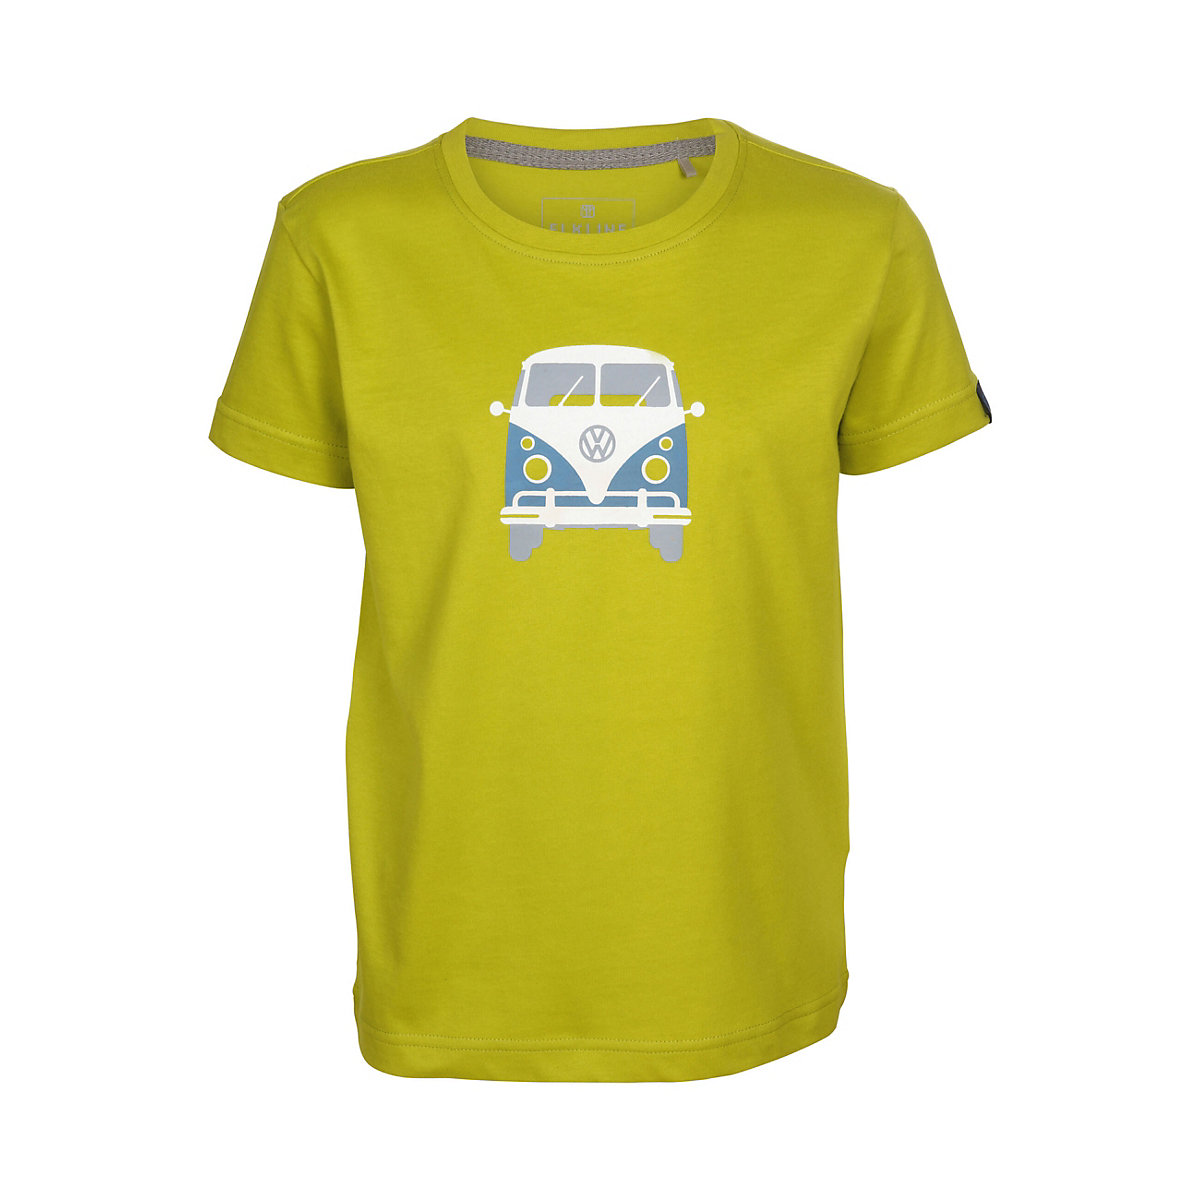 elkline T-Shirt Teeins mit Bulli Brust und Rücken Print für Kinder gelb/grün